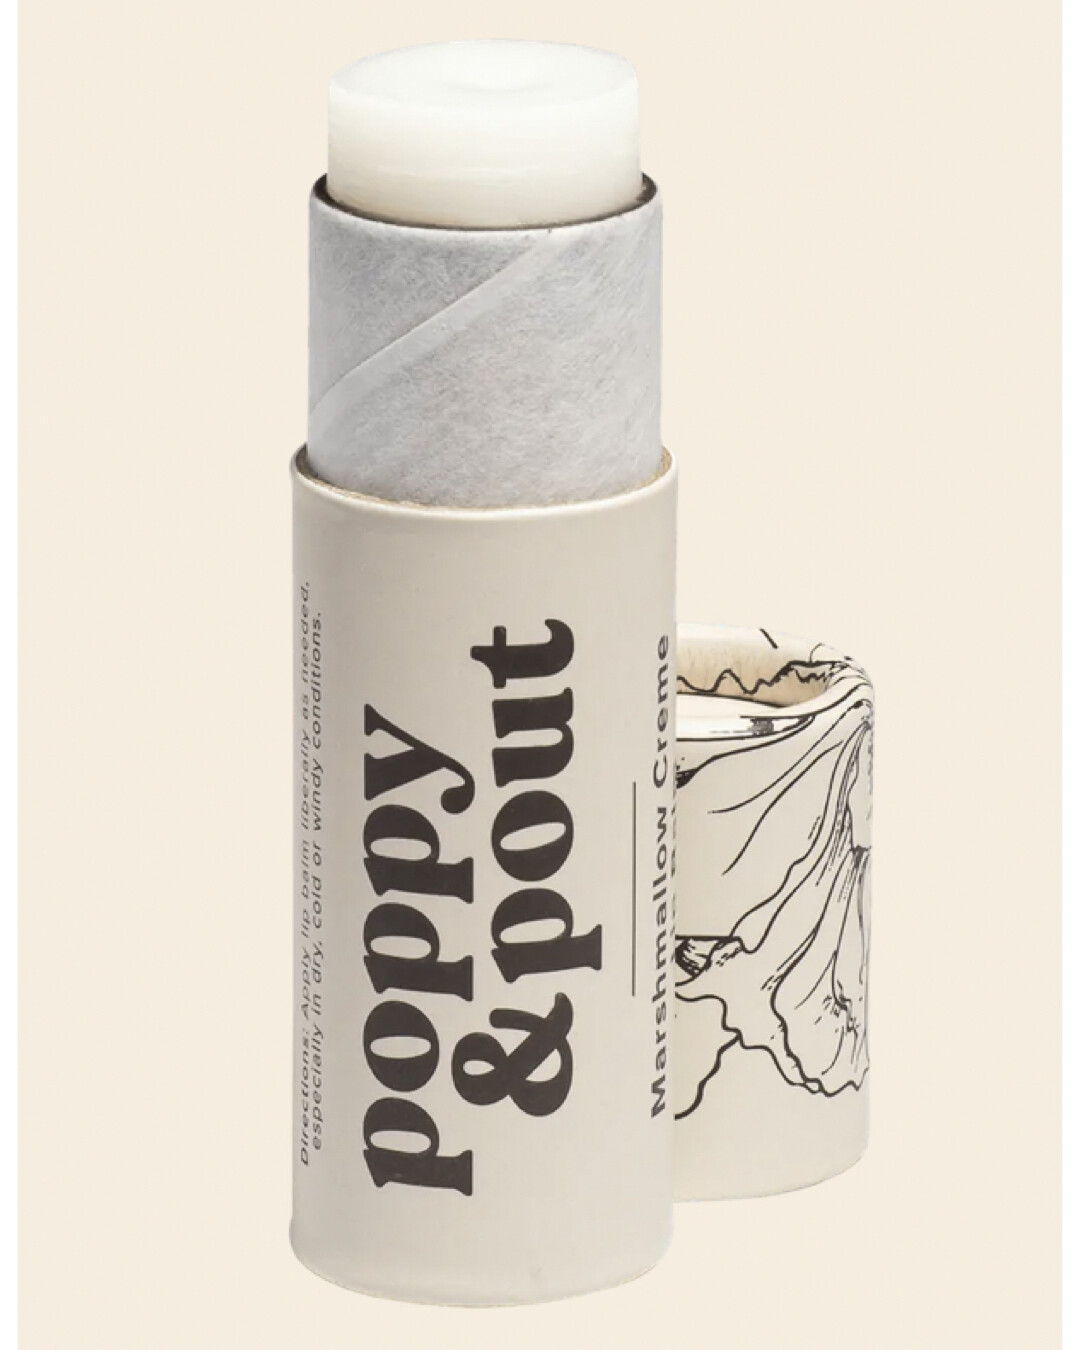 Poppy & Pout Lip Balm- Marshmallow Creme